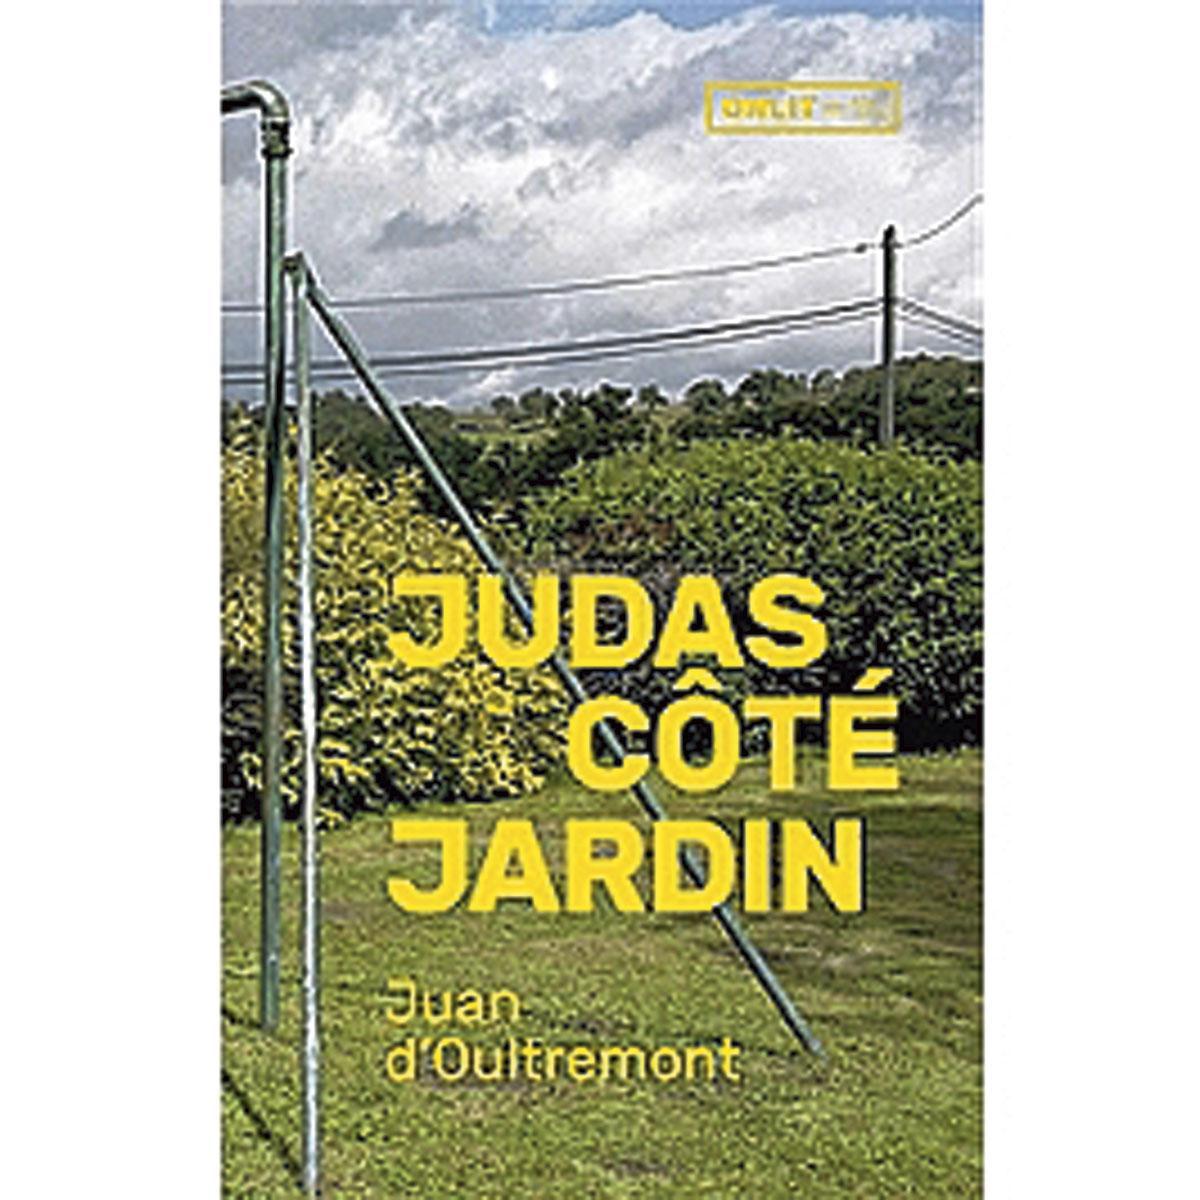 Judas côté jardin, par Juan d'Oultremont, Onlit, 359 p.